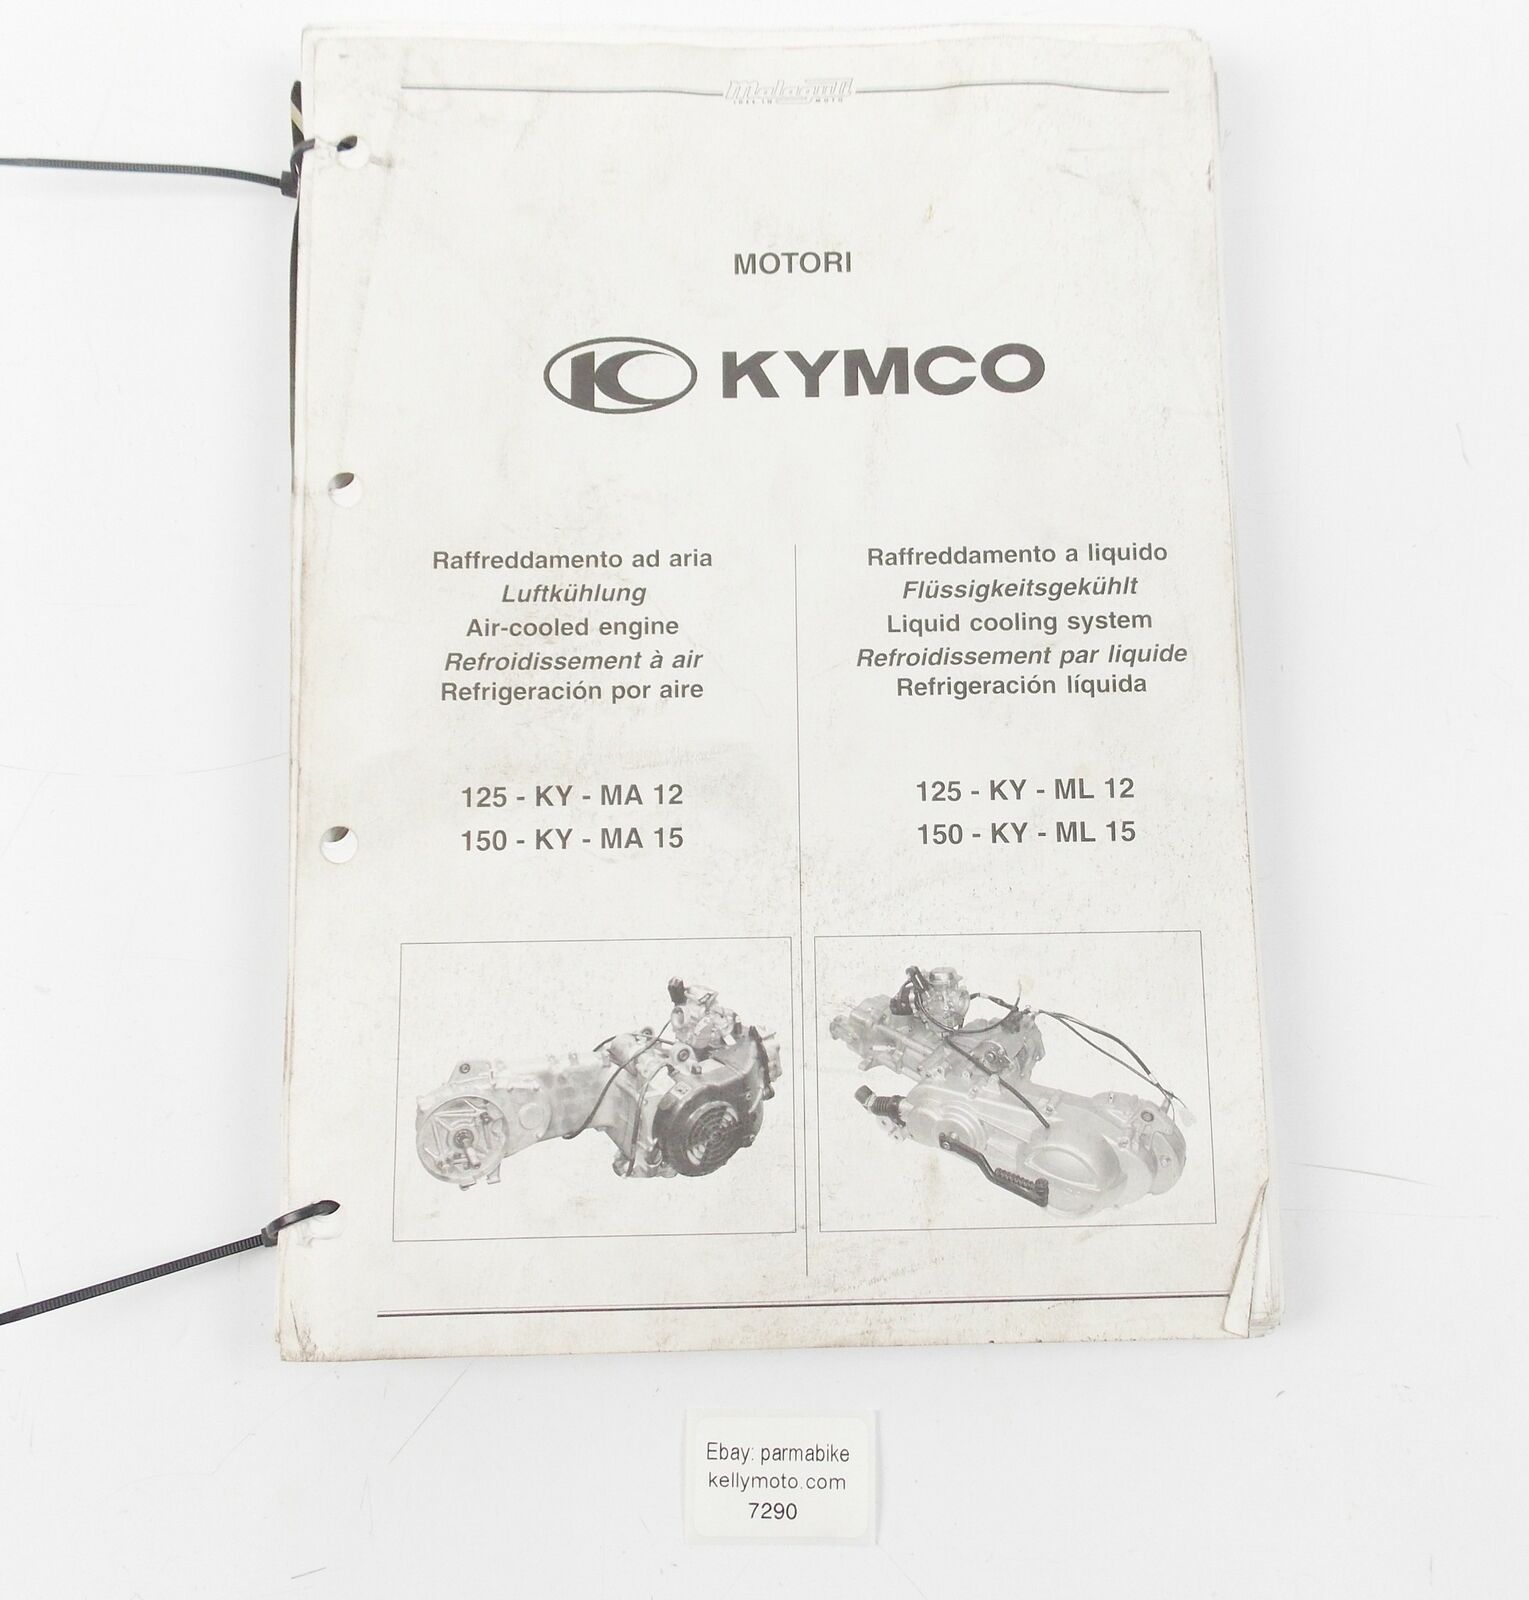 MALAGUTI KYMCO 125-KY-MA 12 150-KY-MA 15 LIQUID AIR COOLED SHOP BOOK MANUAL